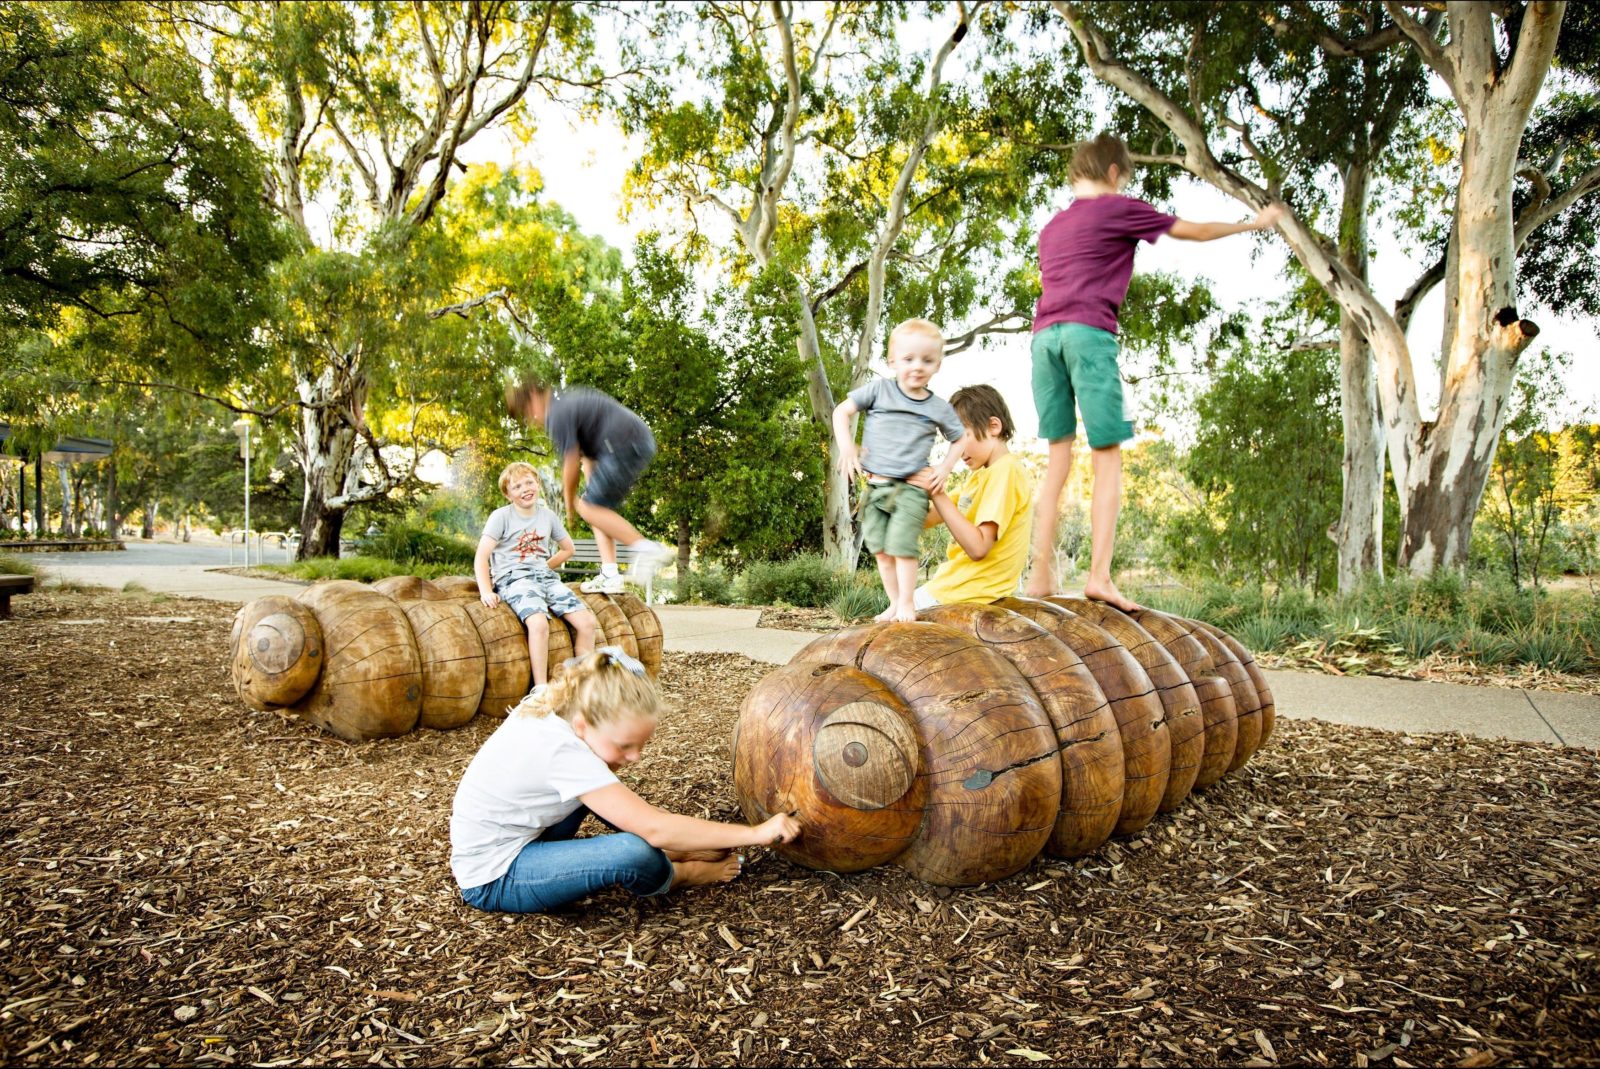 playground, children, wooden sculptures, playing